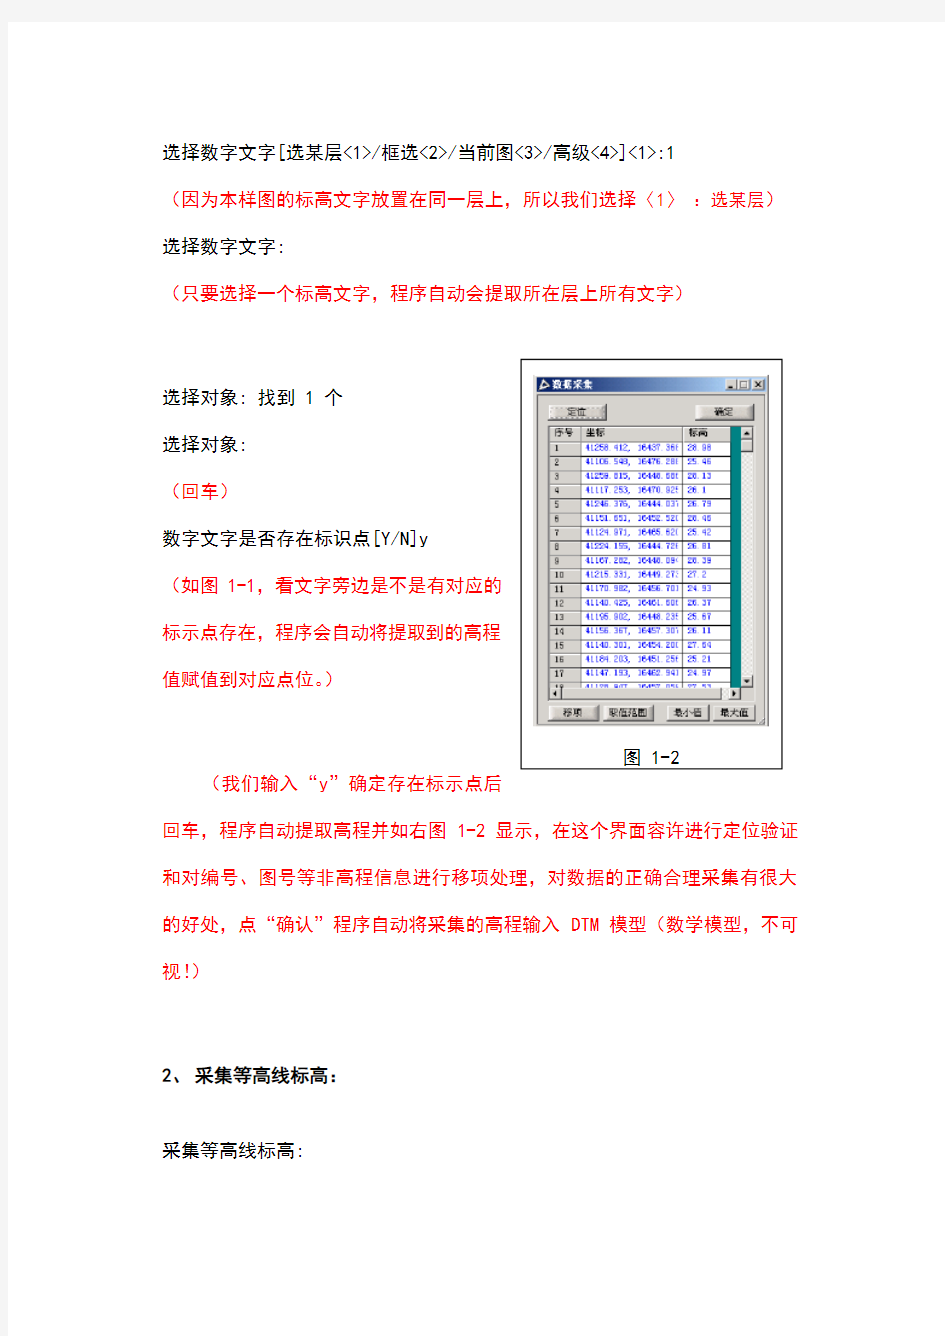 土方工程量计算软件htcad简易操作手册